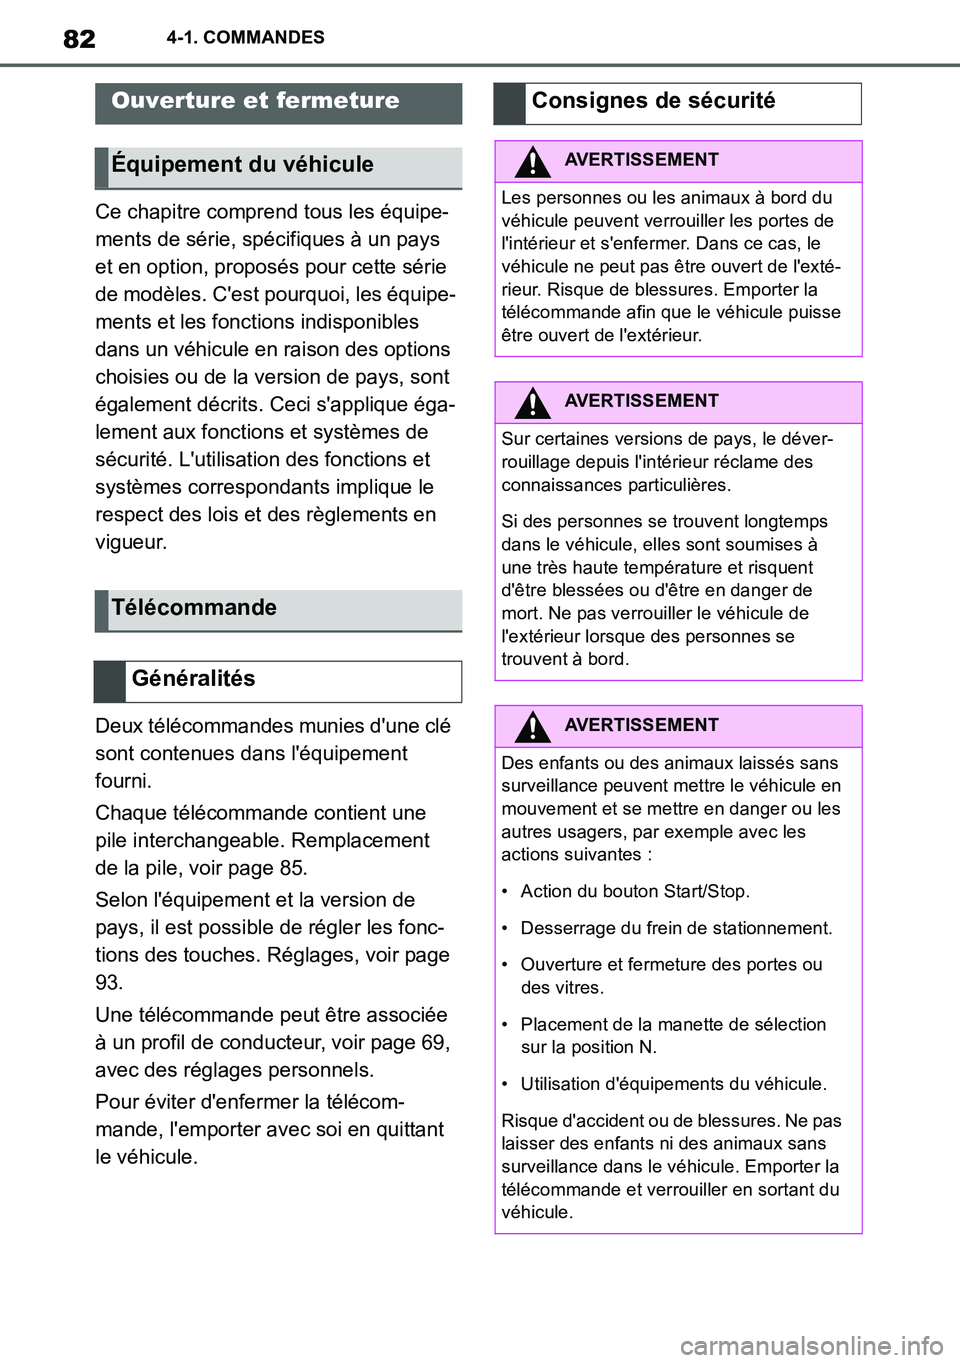 TOYOTA SUPRA 2020  Notices Demploi (in French) 82
Supra Owners Manual_EK
4-1. COMMANDES
4-1.COMMANDES
Ce chapitre comprend tous les équipe-
ments de série, spécifiques à un pays 
et en option, proposés pour cette série 
de modèles. Cest p